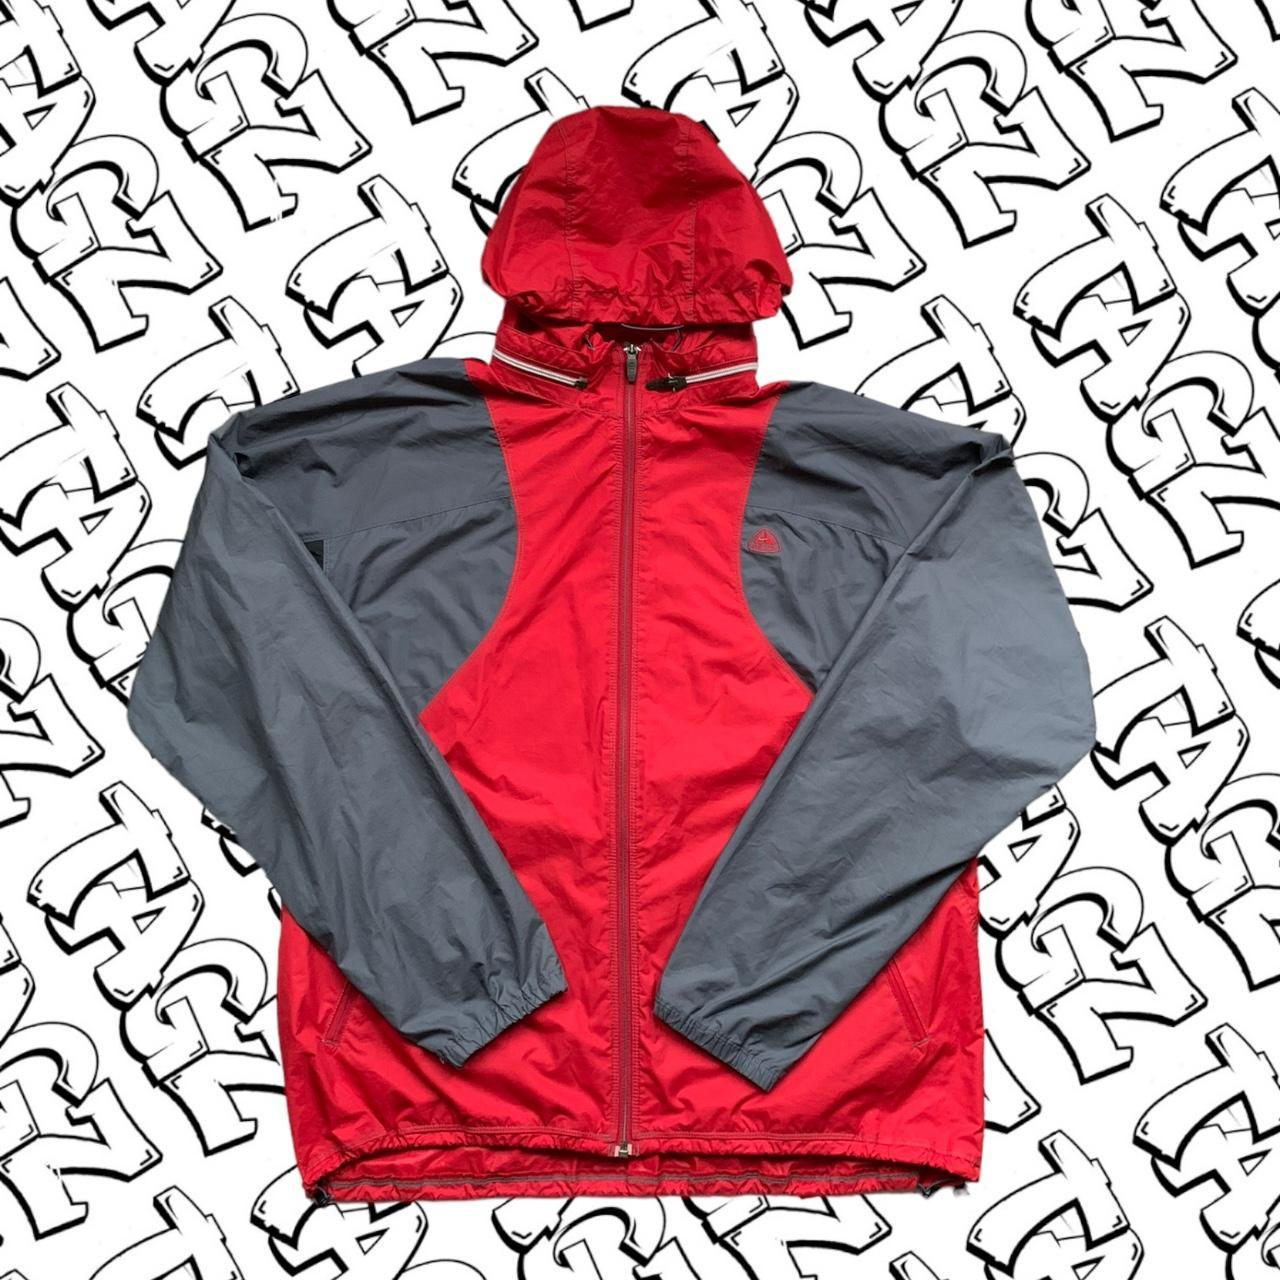 Vintage 2000's Nike acg jacket red and grey rain... - Depop